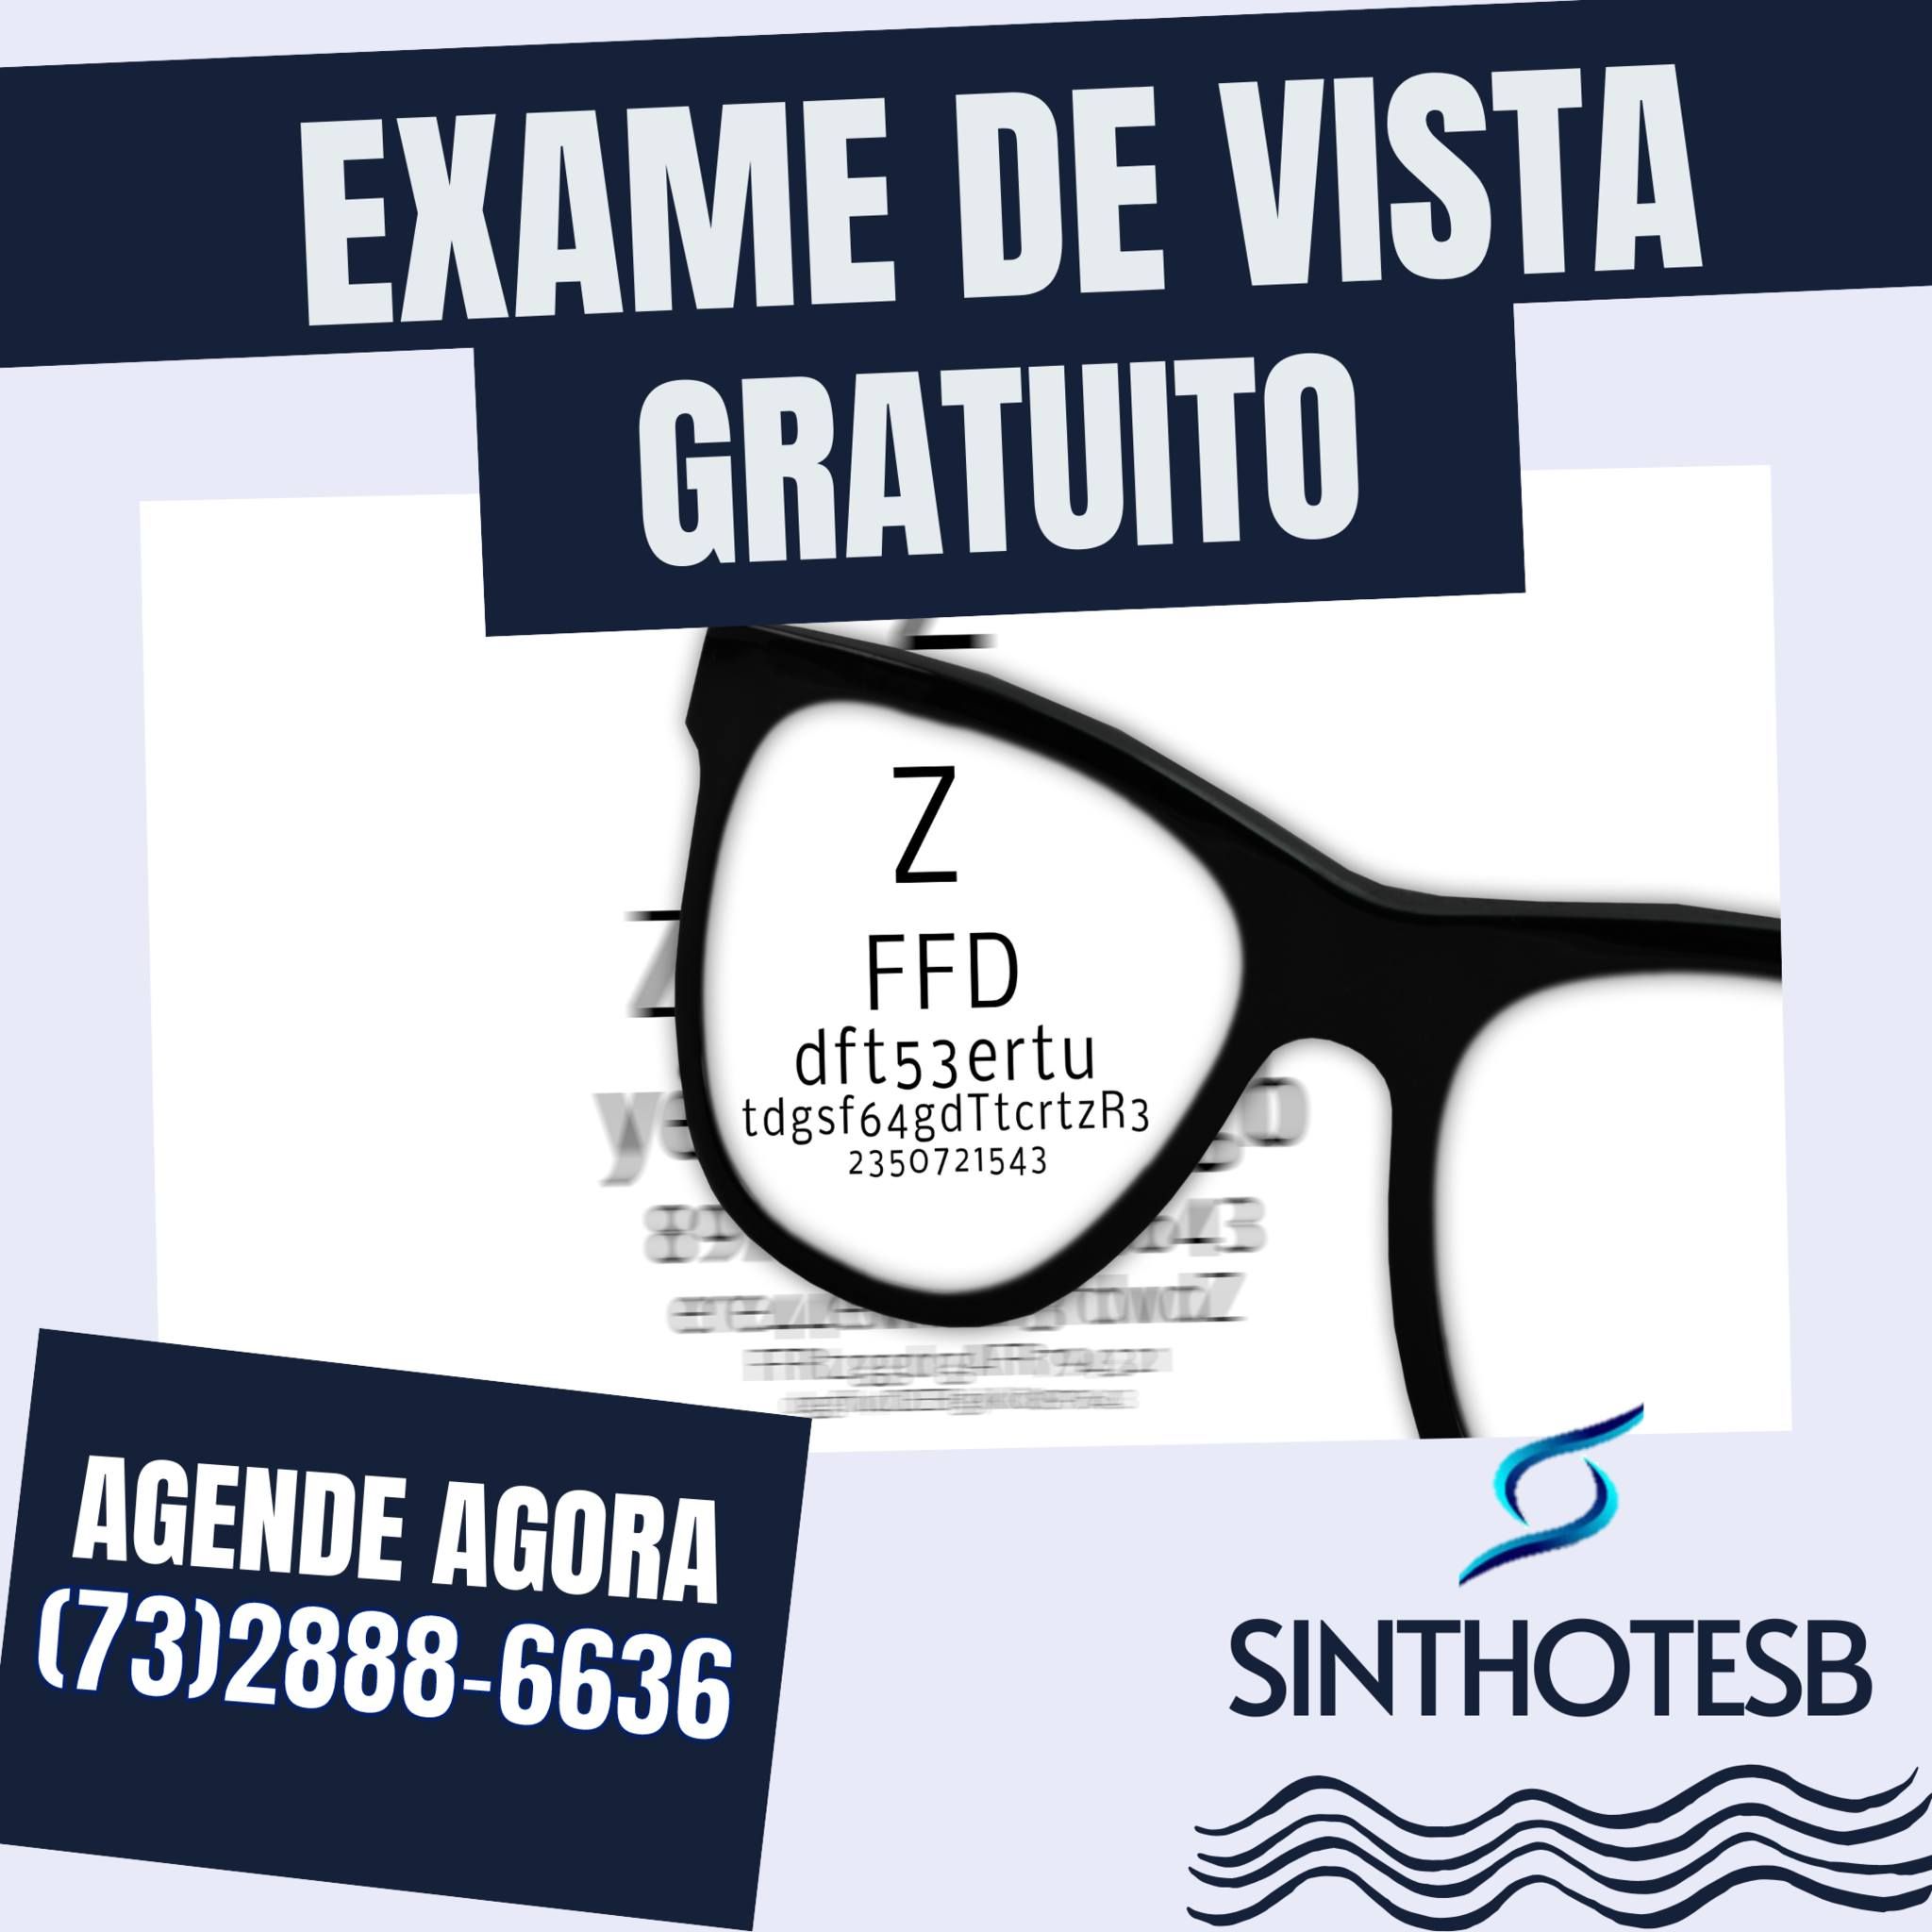 sinthotesb_exame_de_vista